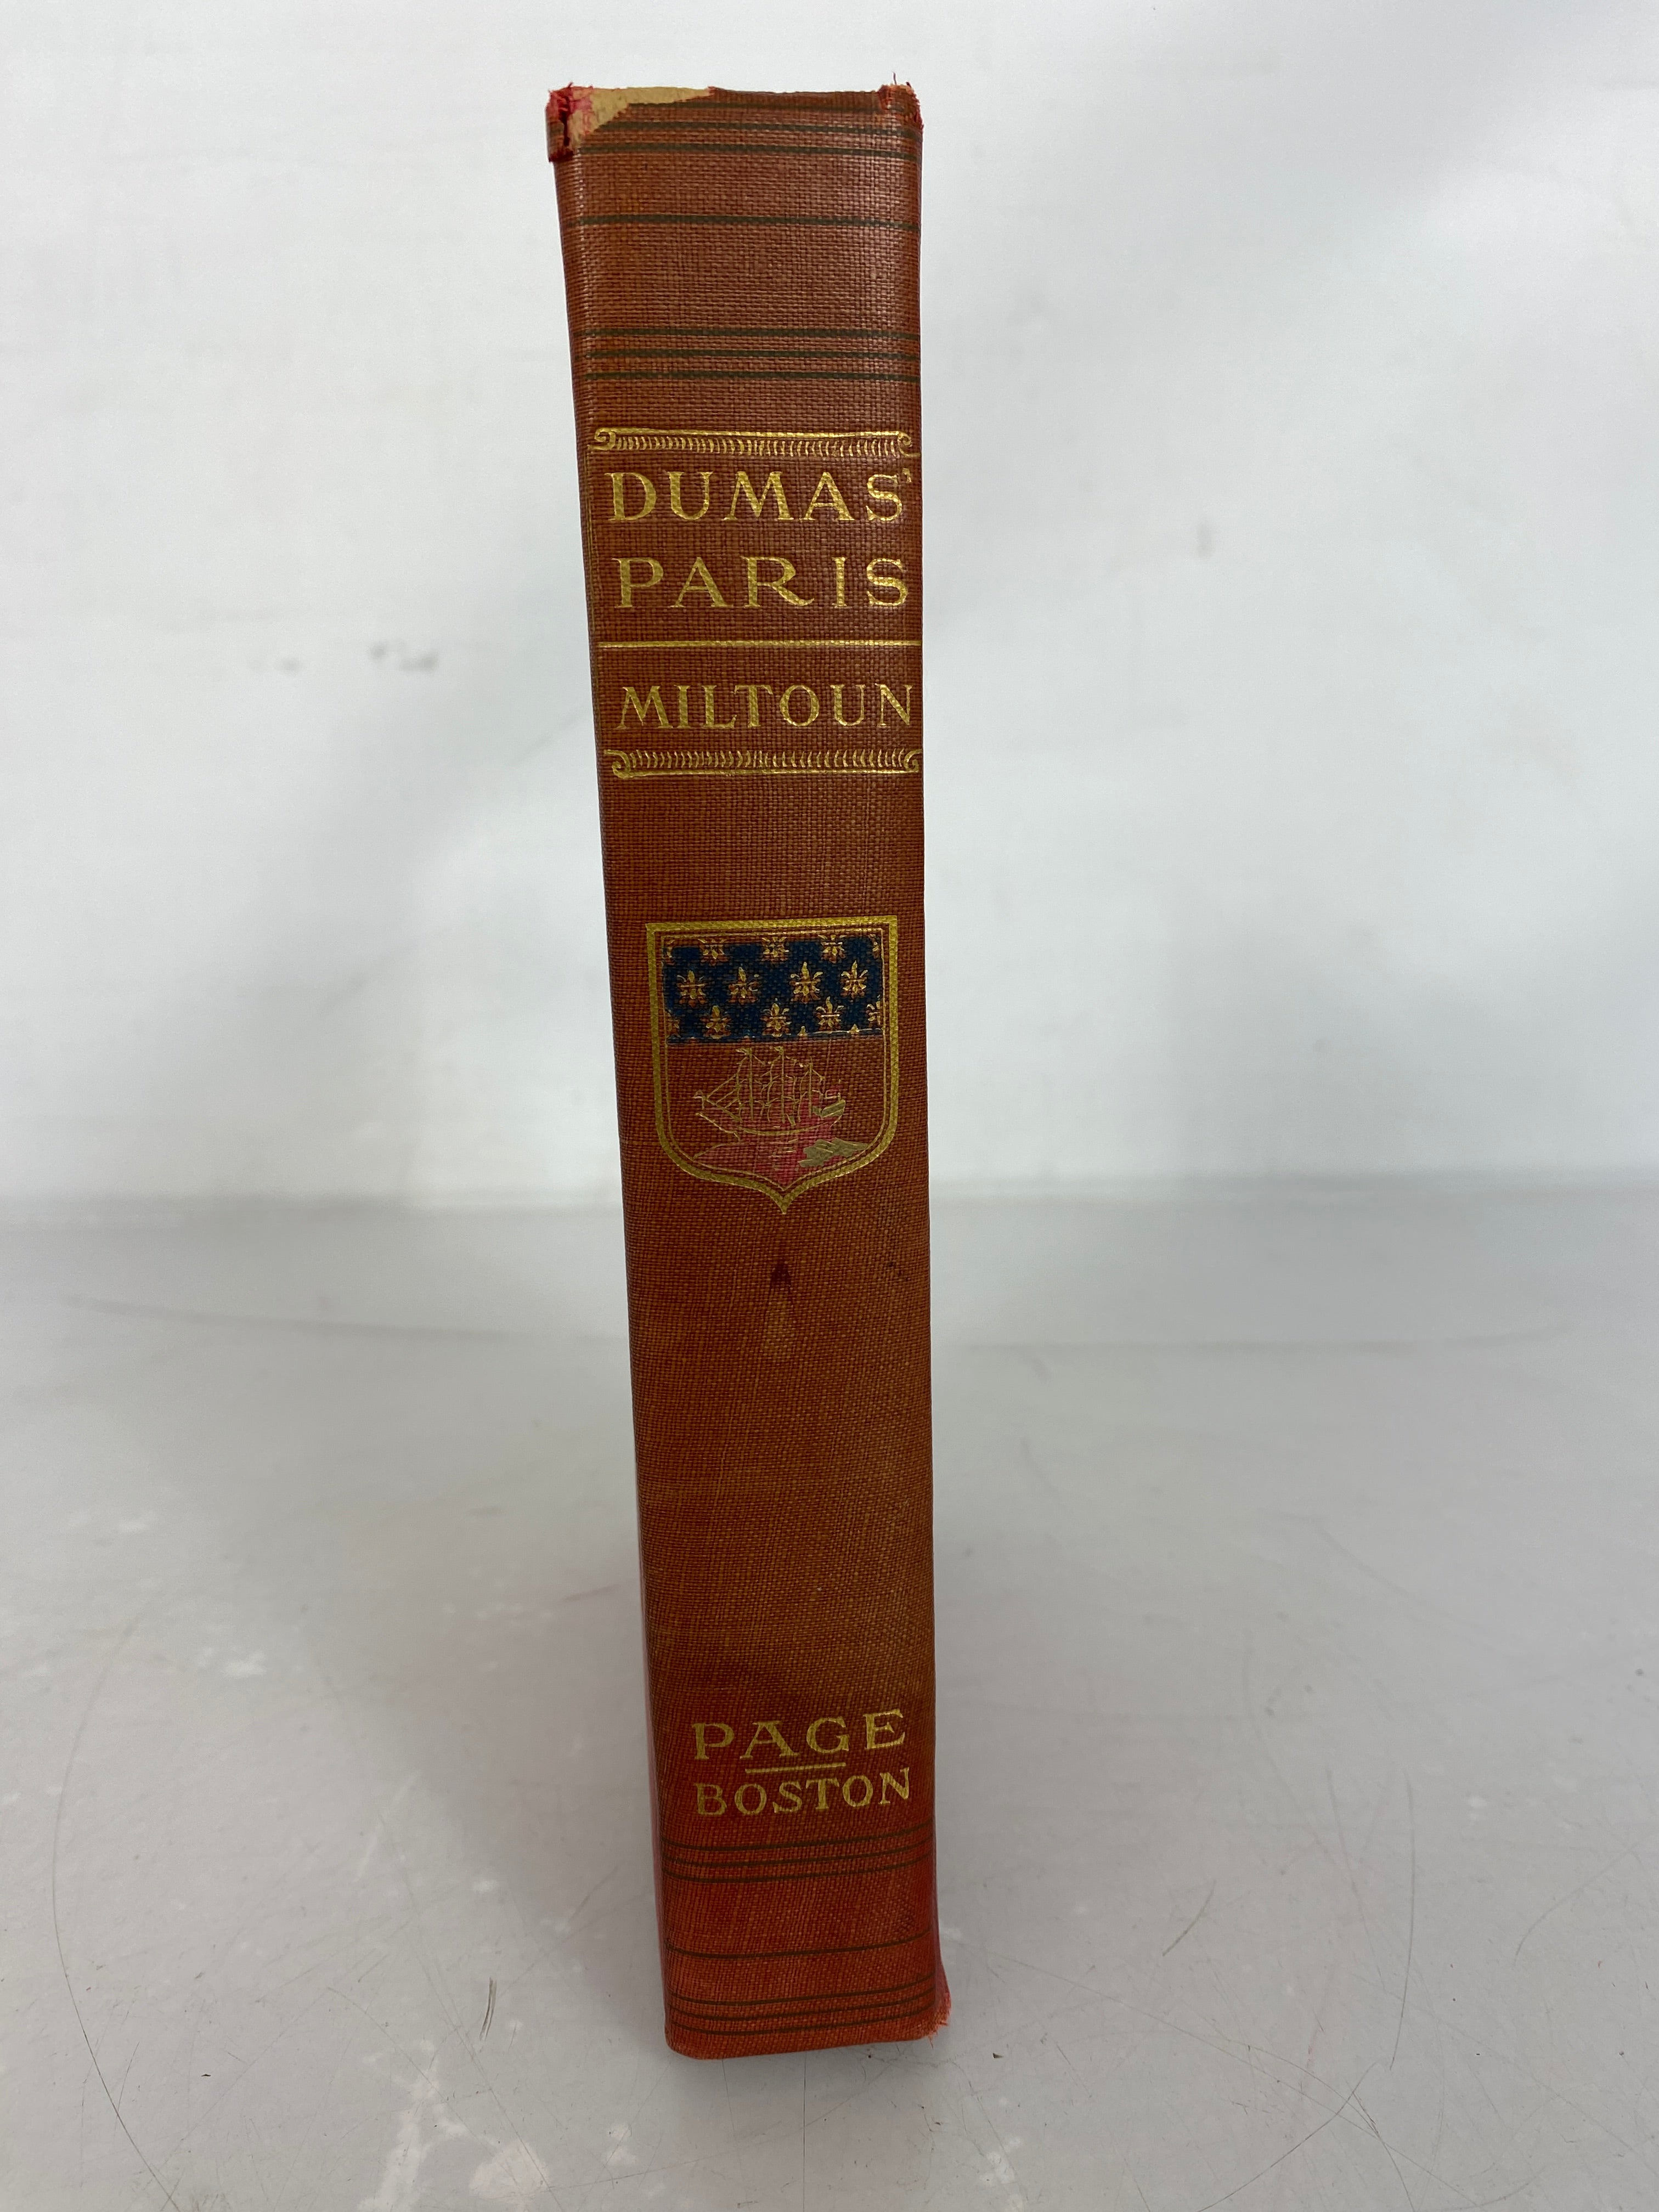 Dumas' Paris by Francis Miltoun Third Impression 1908 HC